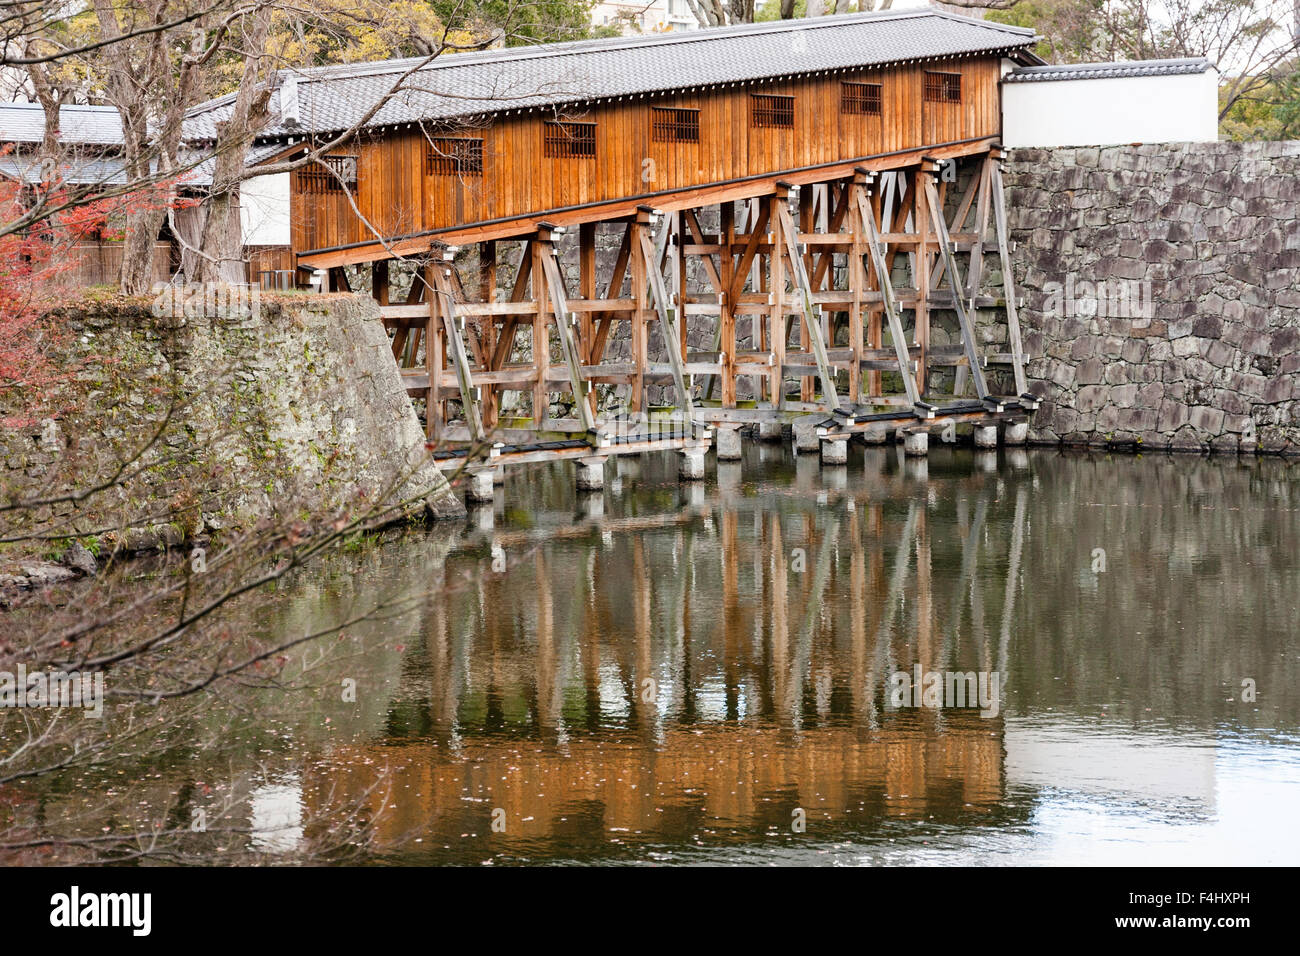 Le Japon, château de Wakayama. Ohashiroka, pont reconstruit un rare exemple d'un pont au clos couvert de douves Diamyo's l'utilisation privée. Banque D'Images